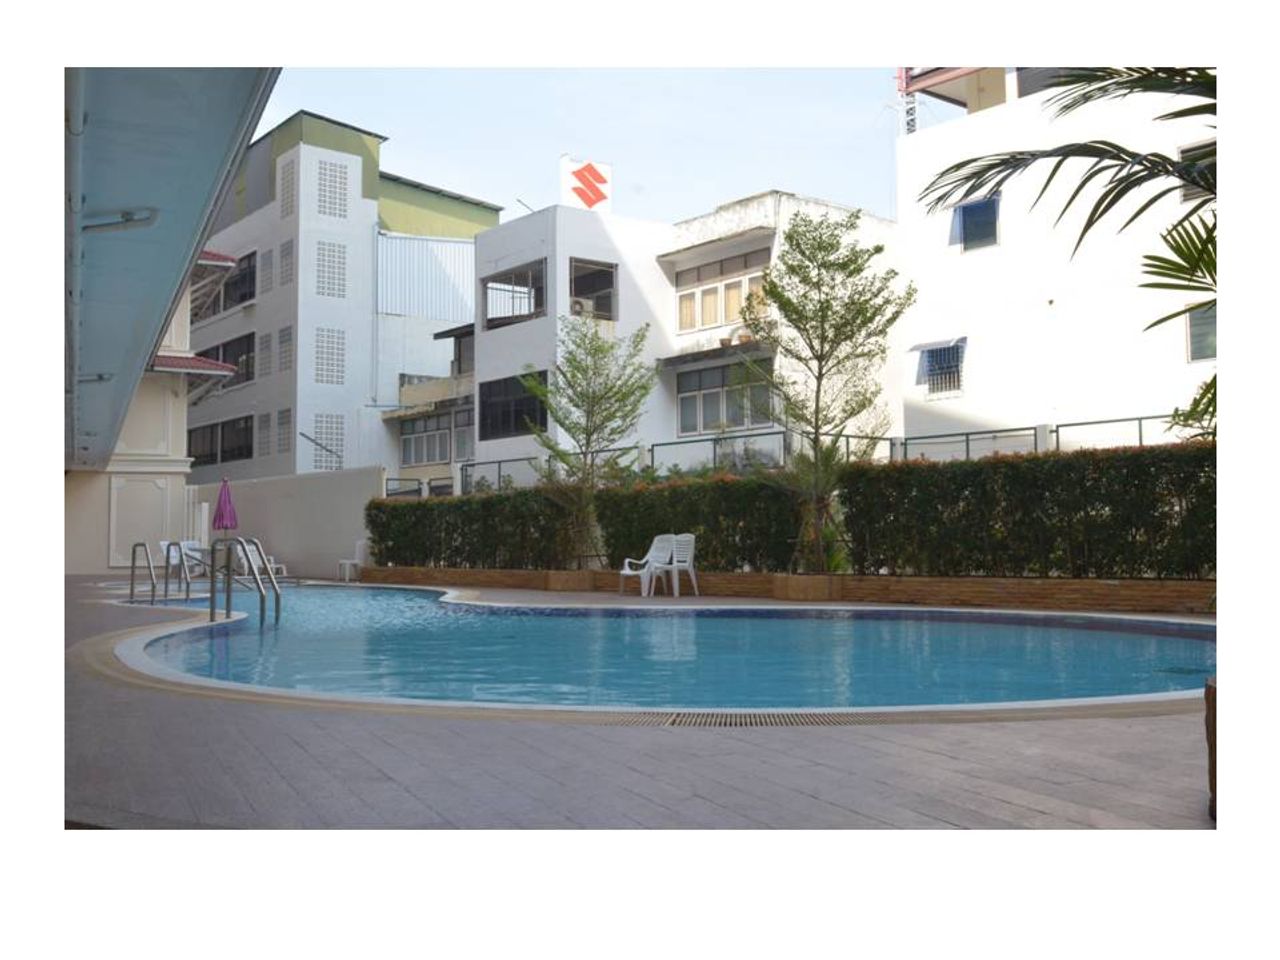 รูปภาพเพิ่มเติม บ้านกลาง-หัวหิน-คอนโดมิเนียม-โดย-ป๊อป - Baan-Klang-Hua-Hin-Condominium-By-Pop - ลำดับที่ 2